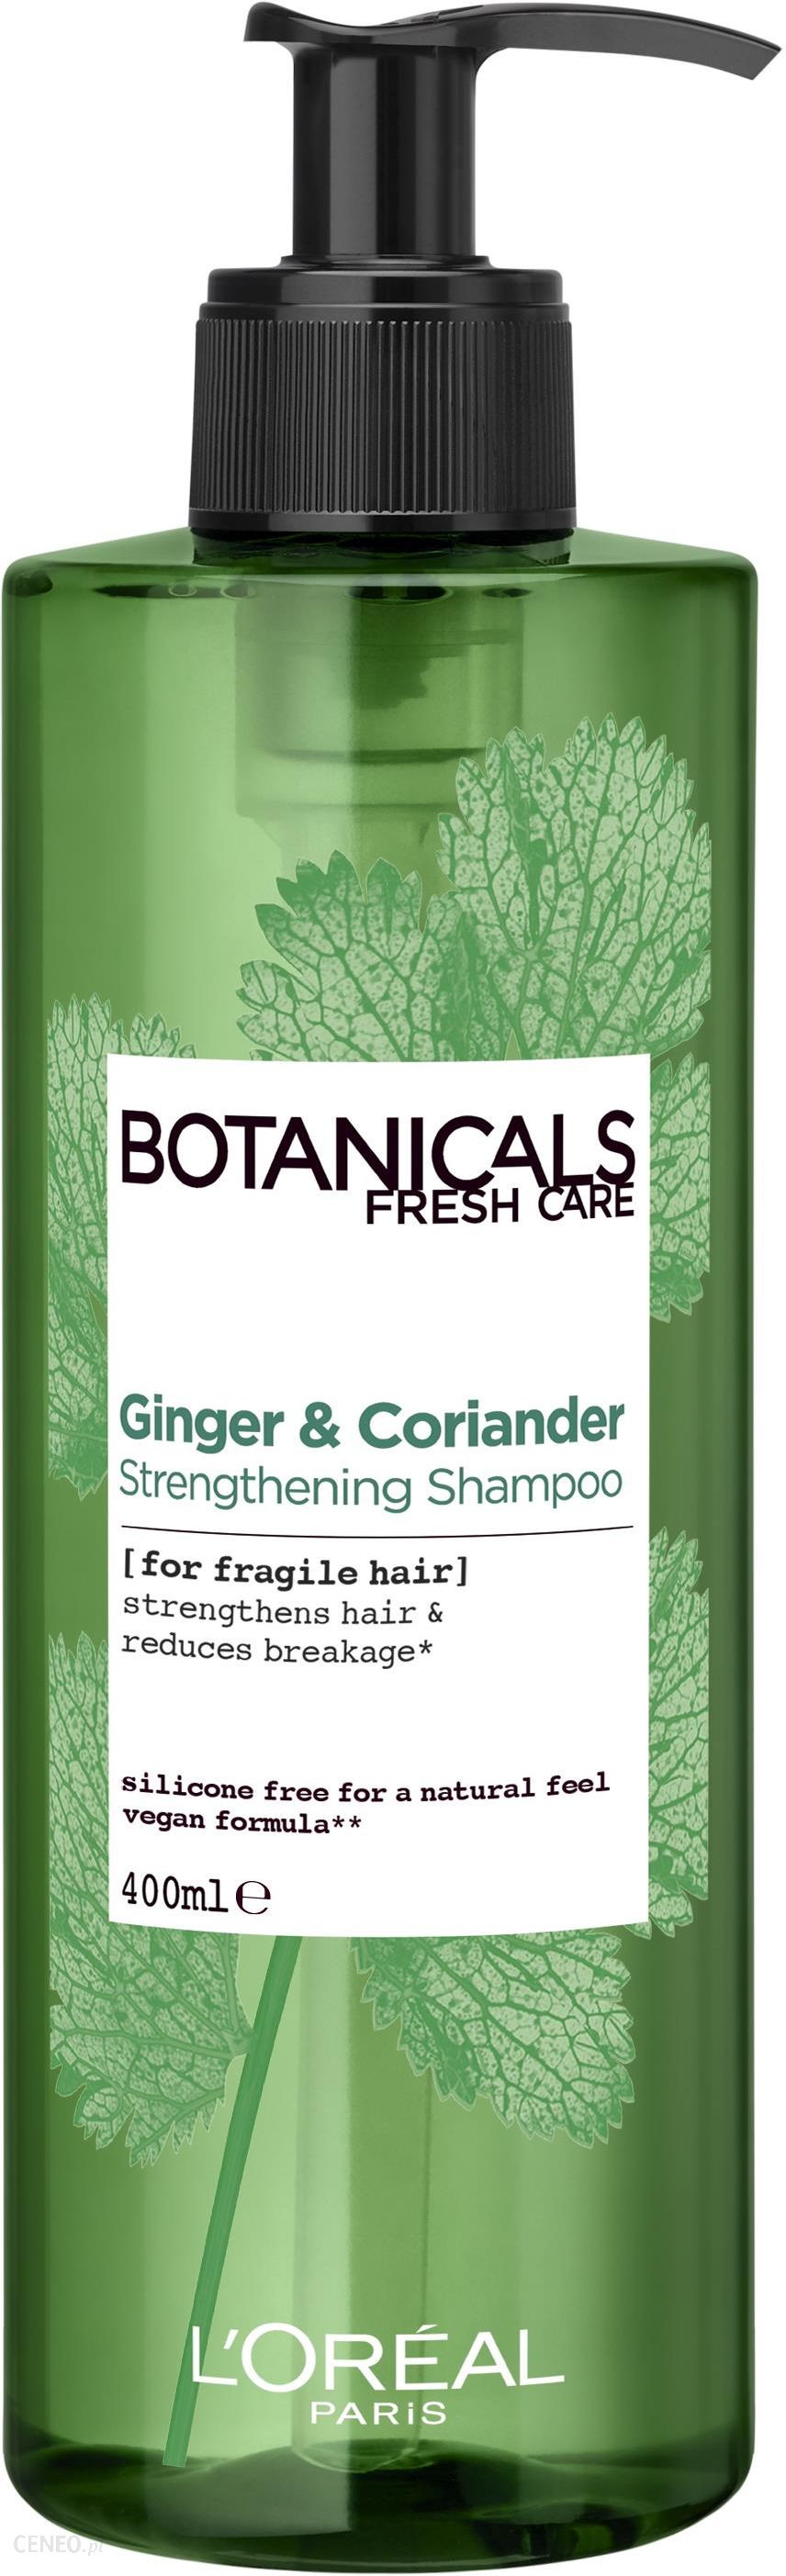 botanicals szampon do włosów suchych